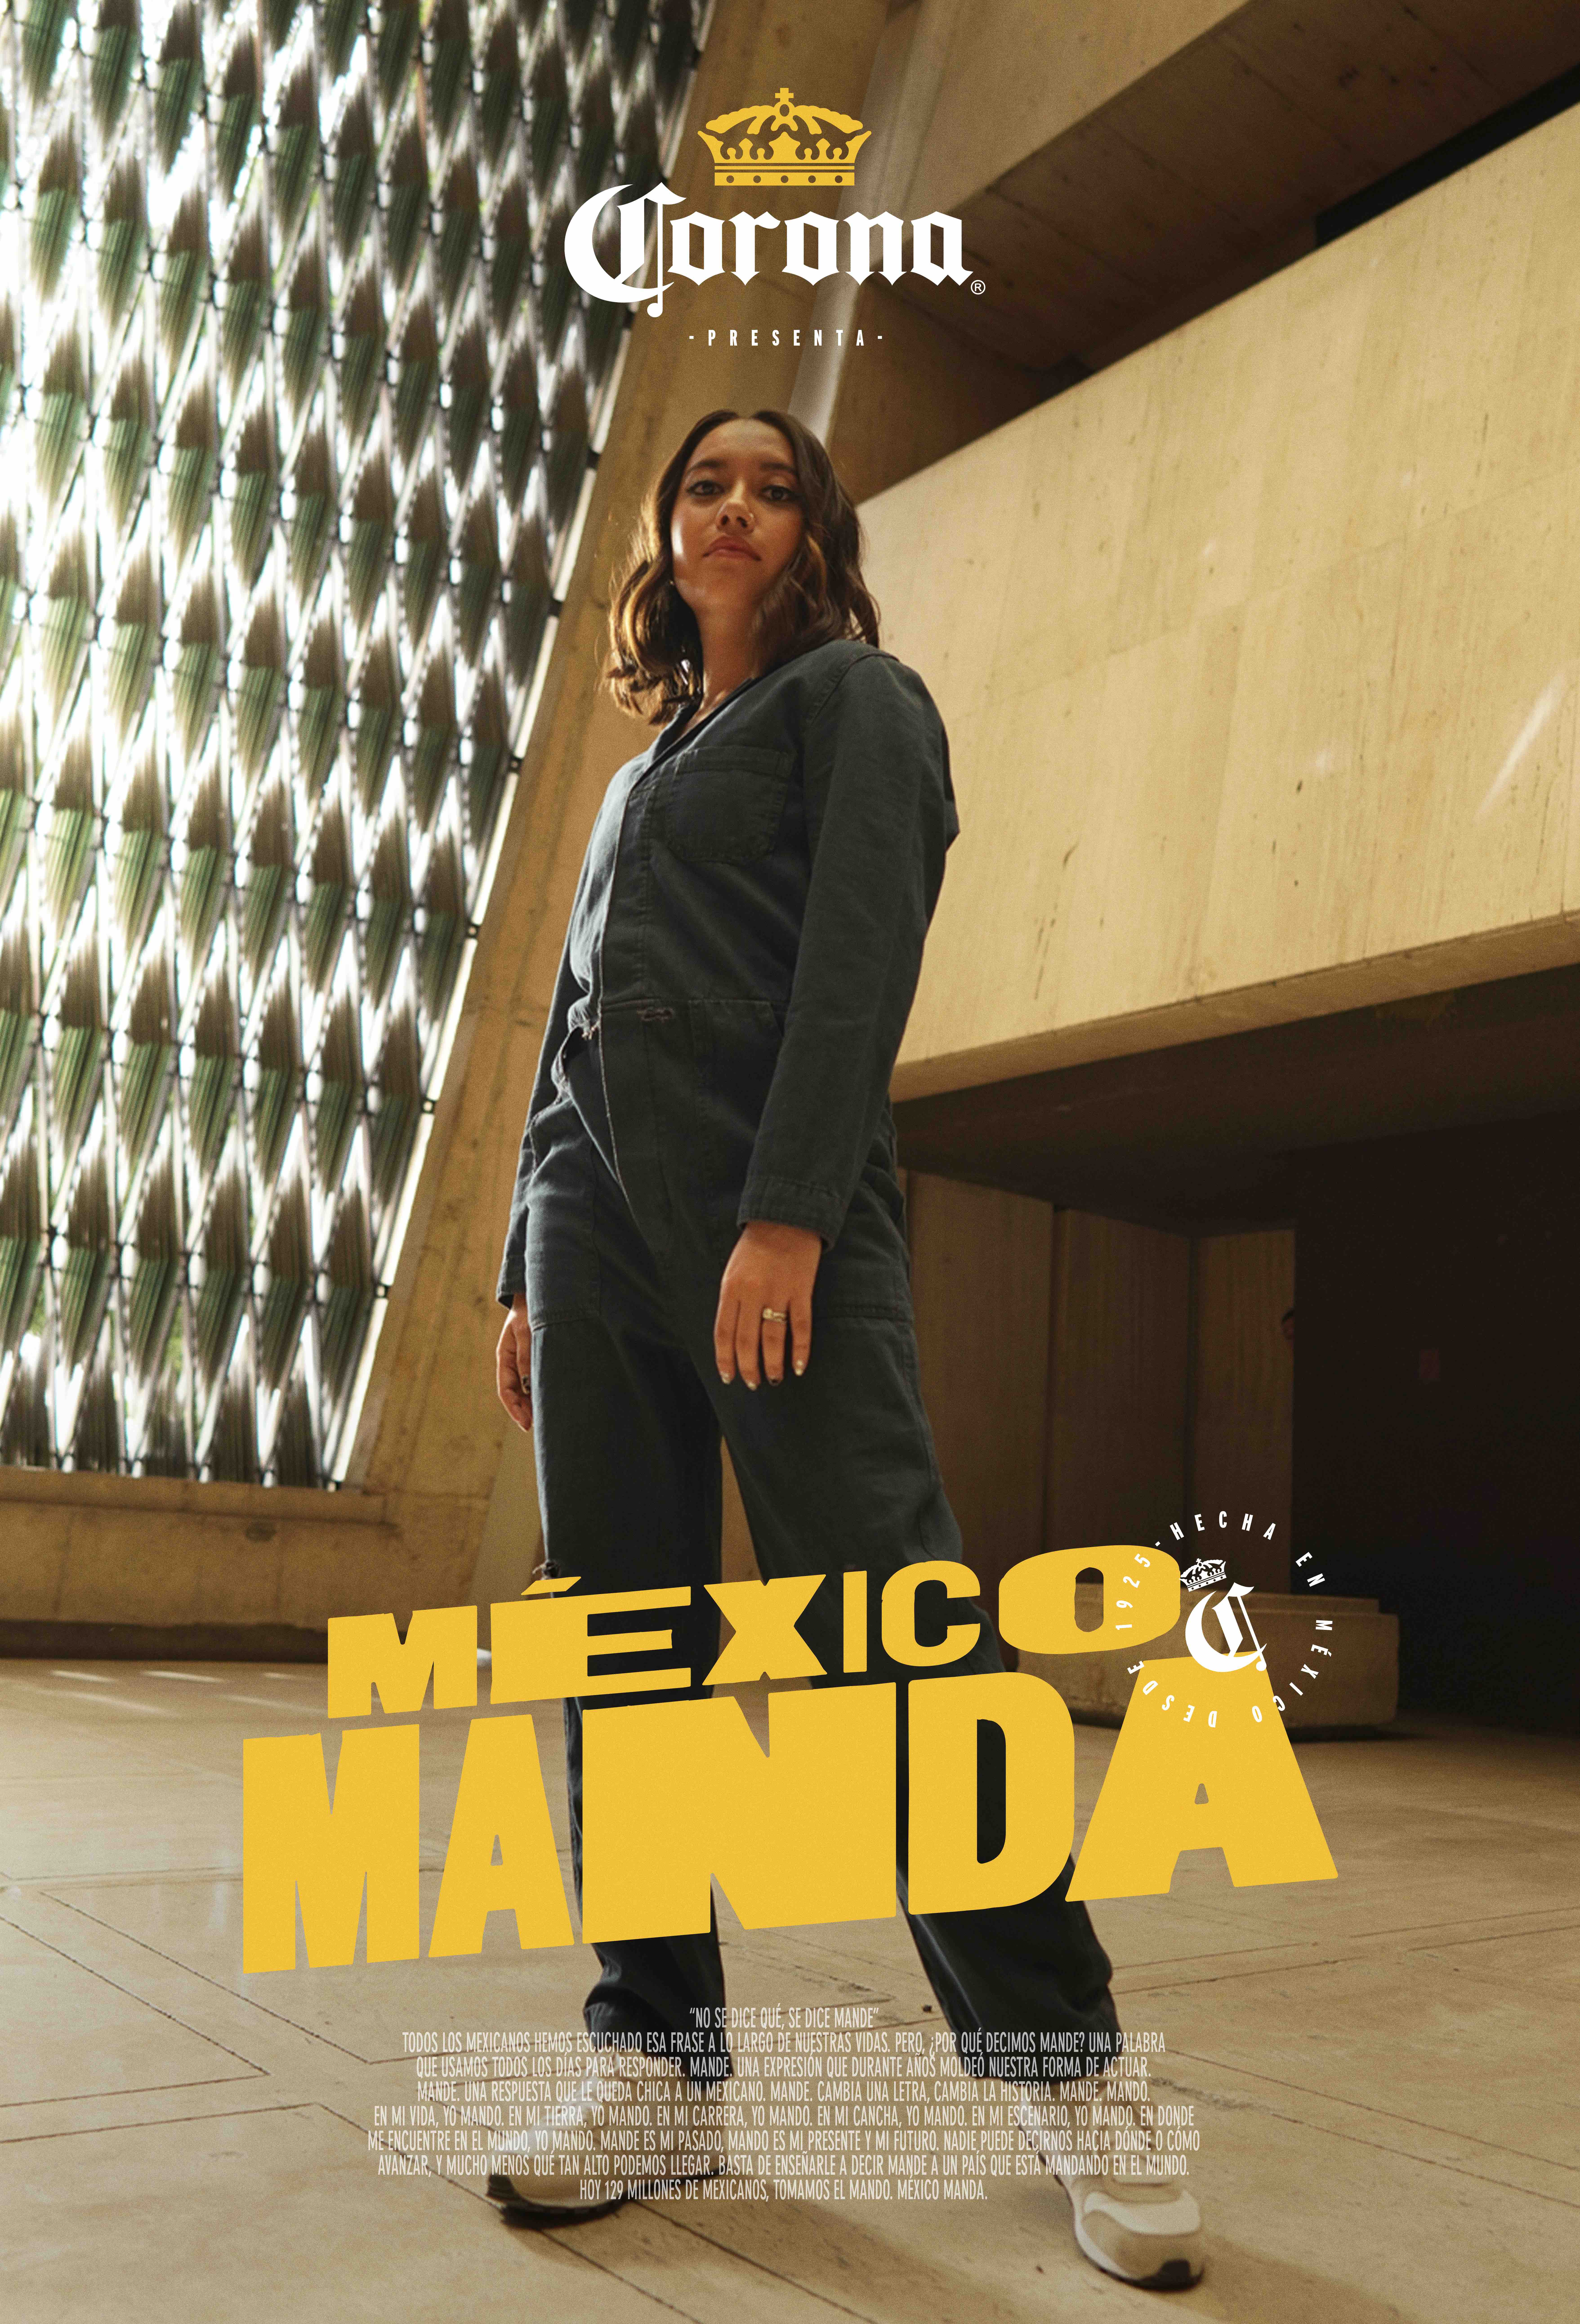 Corona presenta “México manda” La campaña que prueba que el espíritu mexicano puede conquistar el mundo